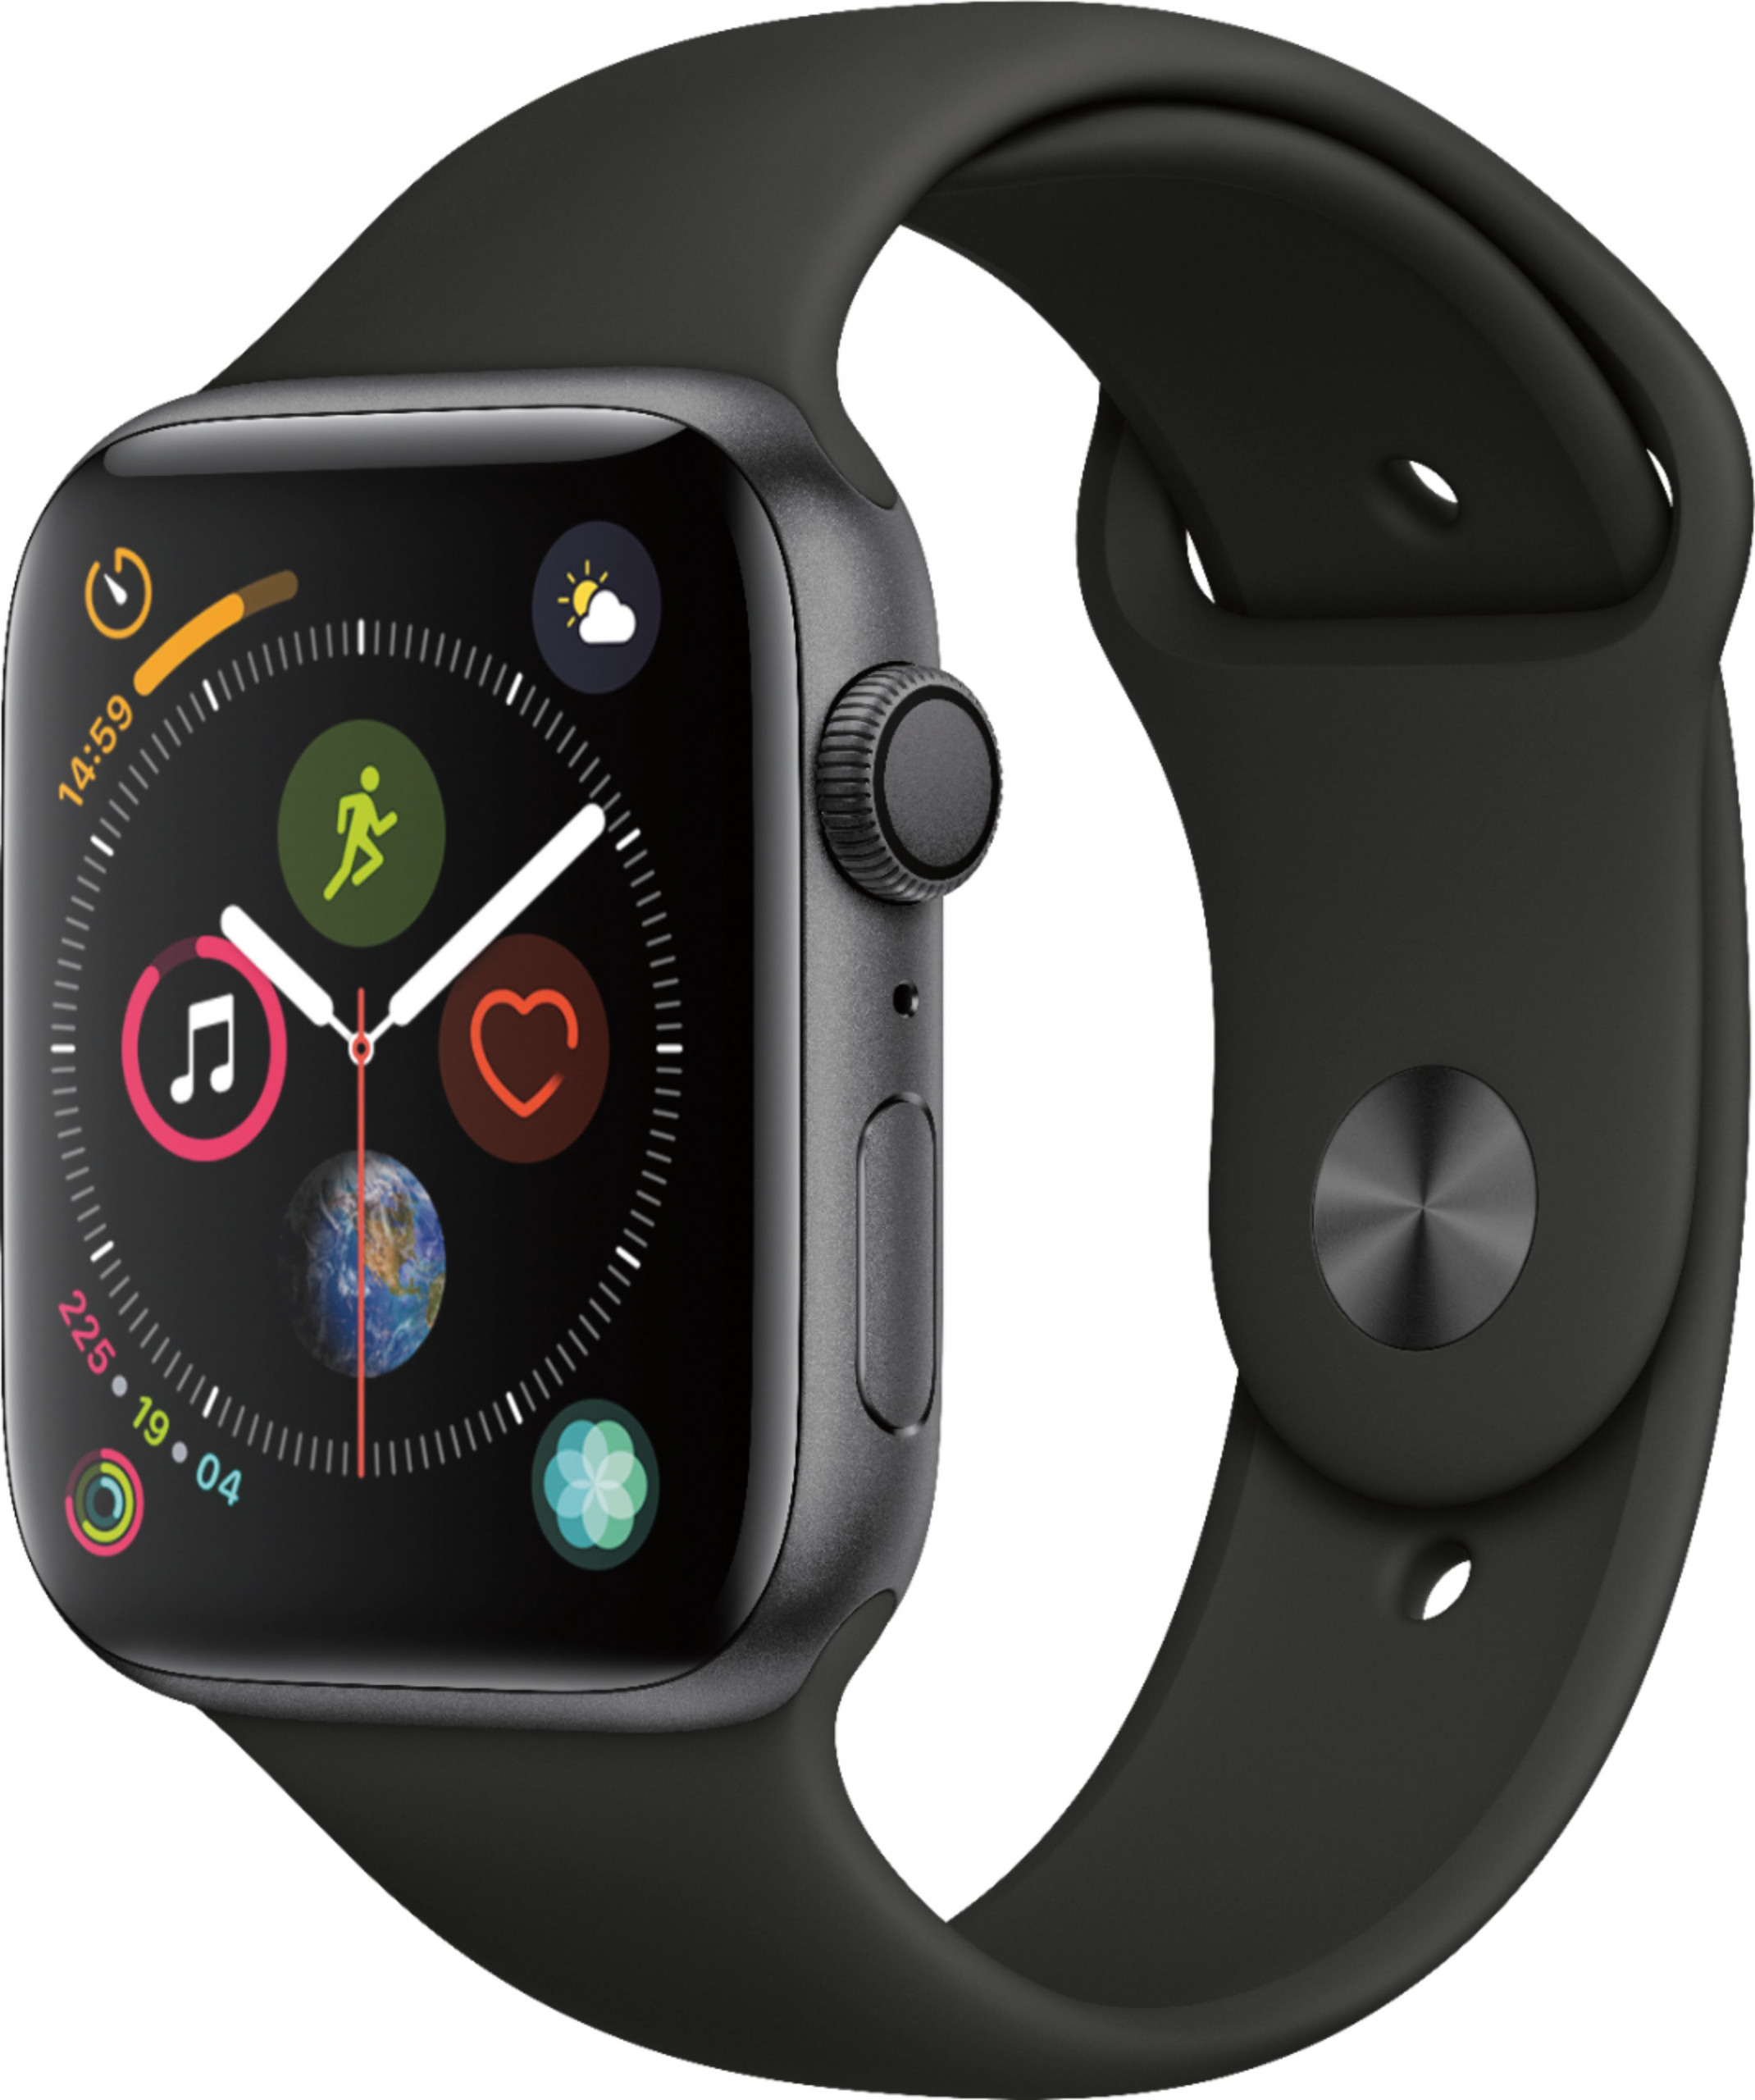 Apple-Watch-Series4-Img1-scaled-1.jpg